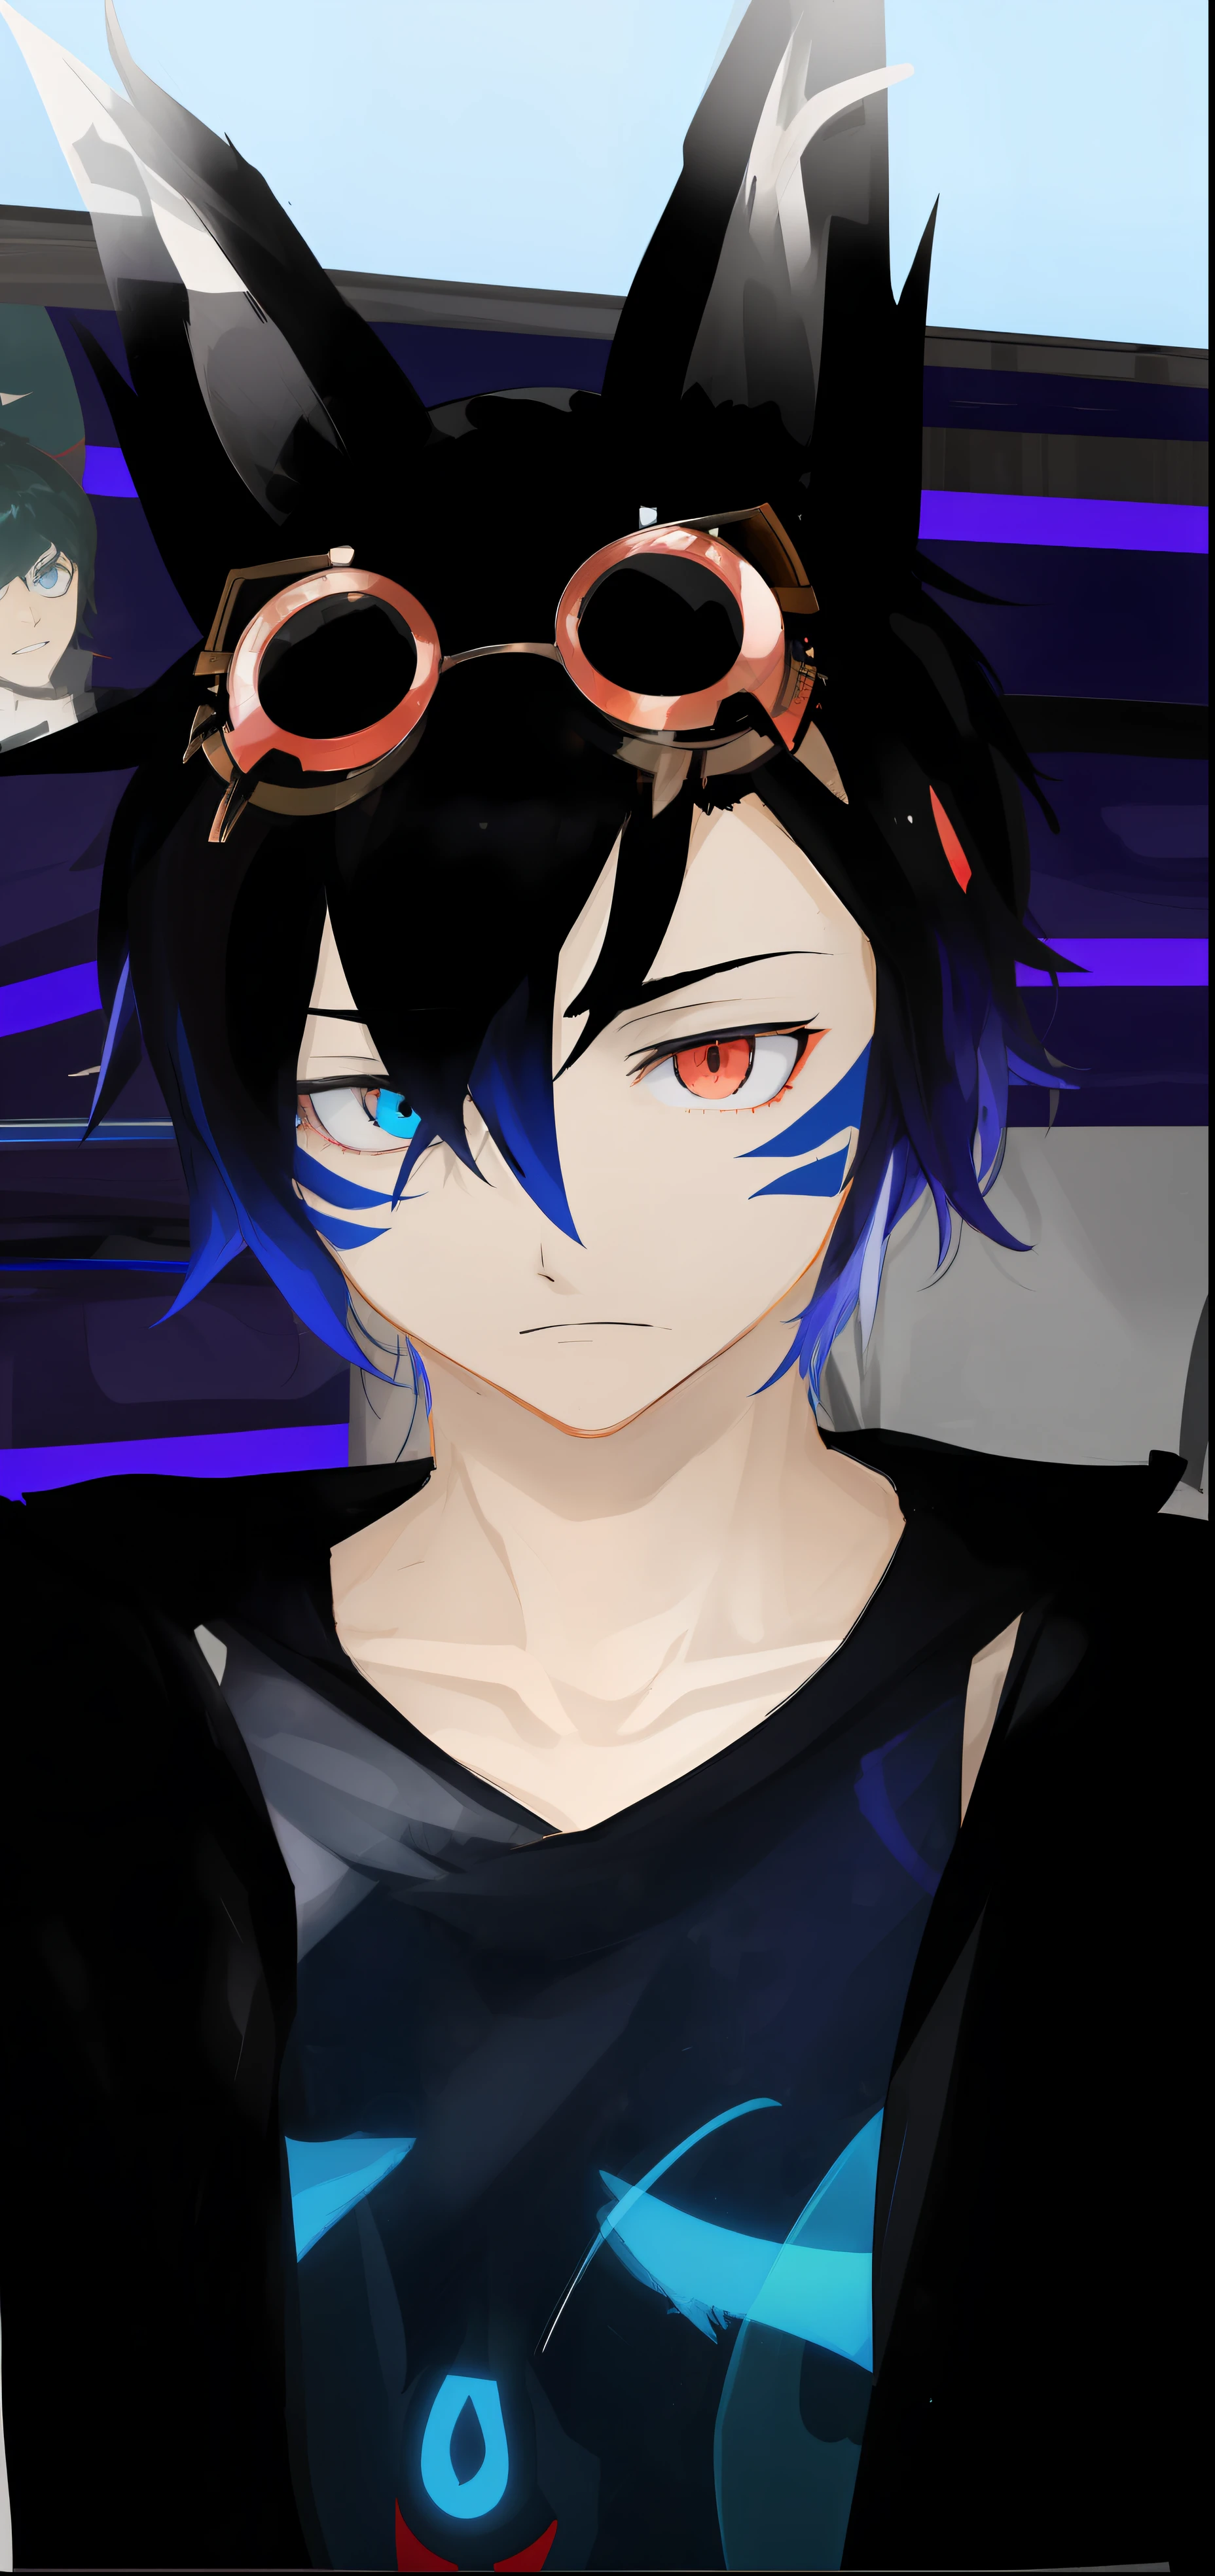 Anime-Figur mit Schutzbrille und blauem Hemd vor einer Bühne, Second Life-Avatar, inspiriert von Okumura Masanobu, vrchat, hinterhältiger böser Ausdruck, böser hinterhältiger Mann, traurige himmelblaue Augen, 3D im Anime-Stil, Persona 5 Phantom Thief-Stil, Oberkörper-Avatar, junger Schattenmagier, männlich, inspiriert von Okumura Togyu